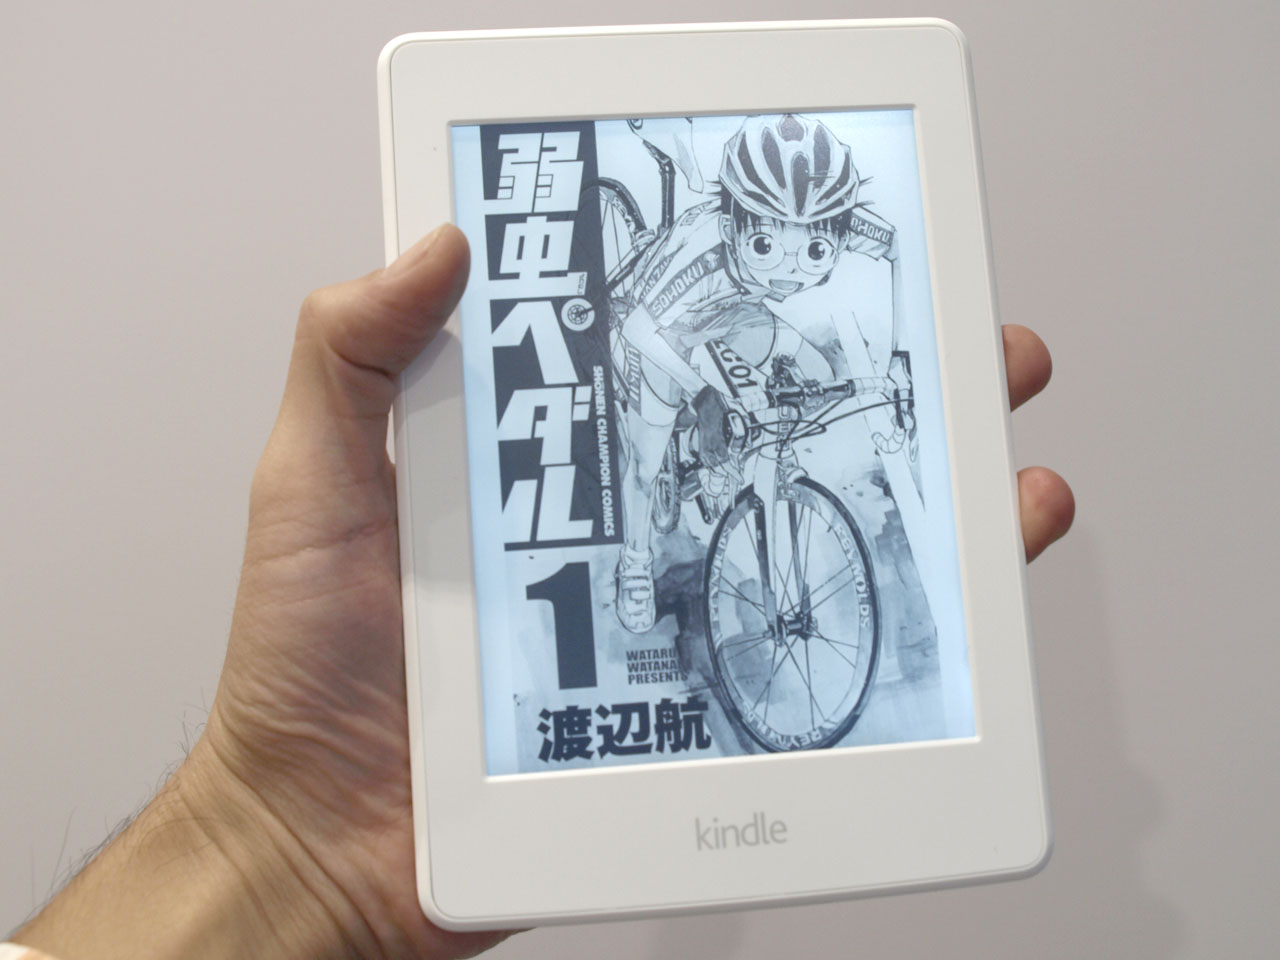 日本限定でストレージ8倍の「Kindle Paperwhite 32GB マンガモデル